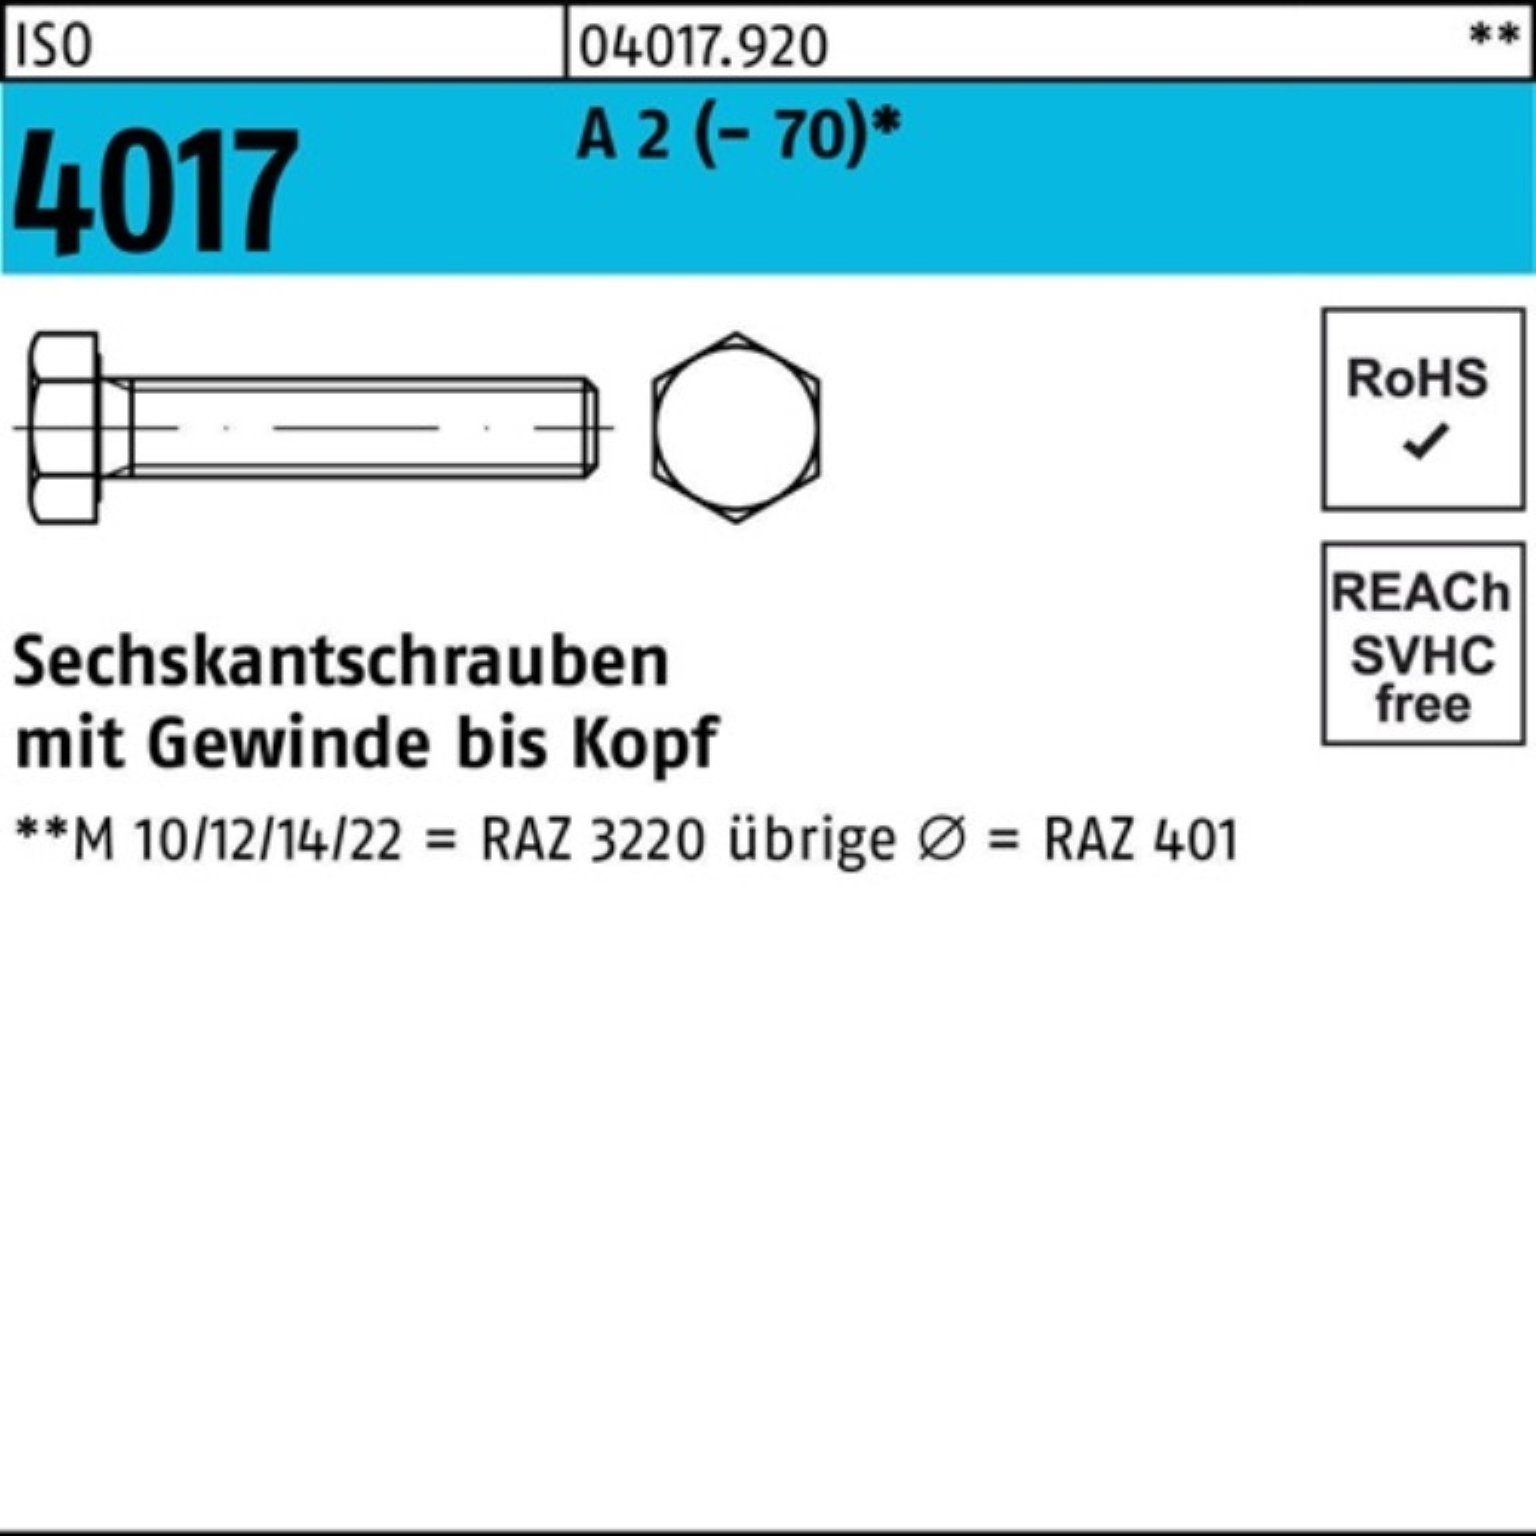 Bufab Sechskantschraube 100er Pack Sechskantschraube ISO 4017 VG M27x 90 A 2 (70) 1 Stück I